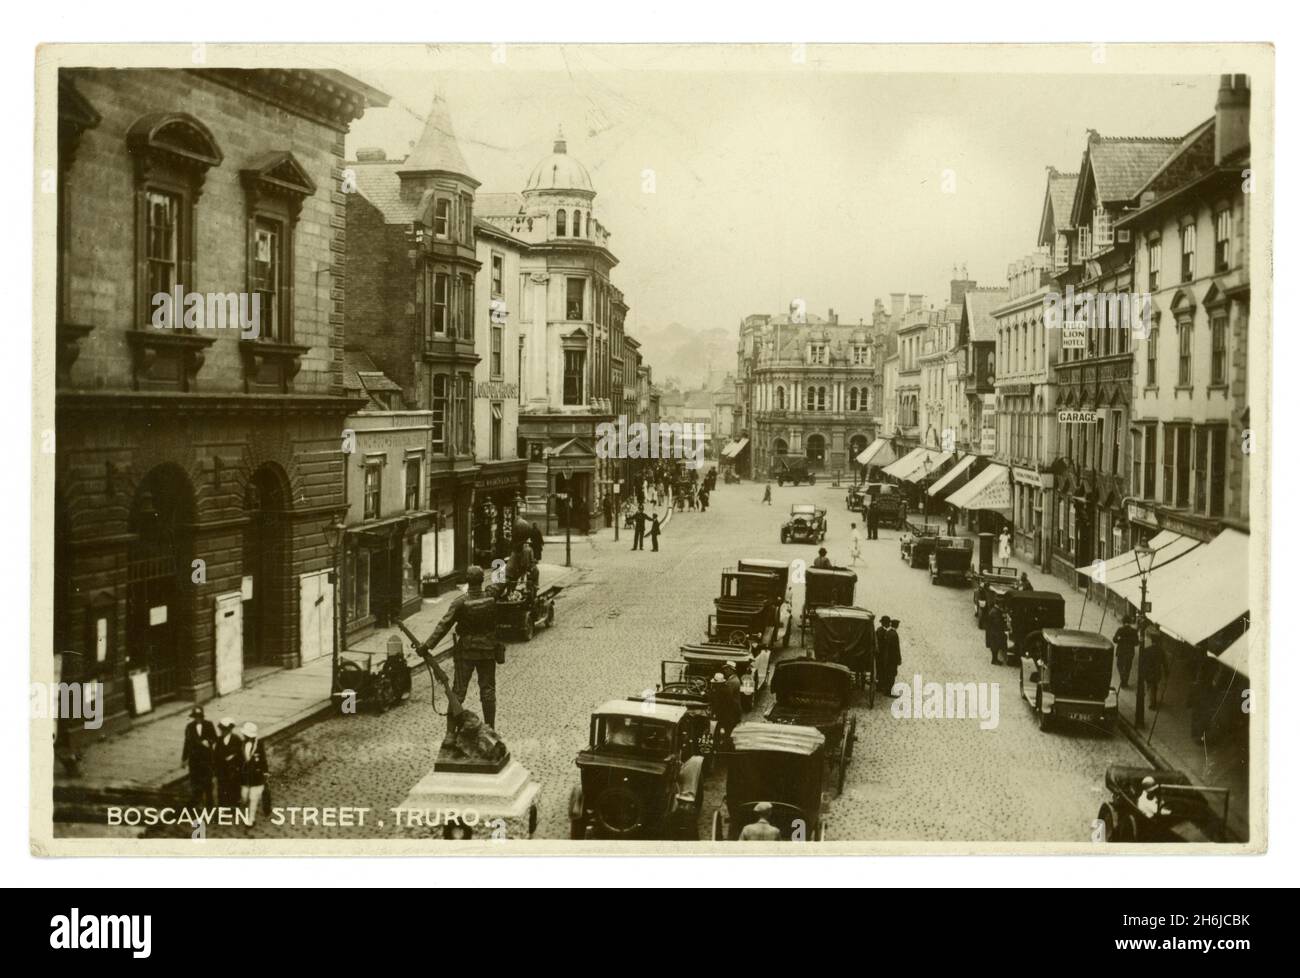 Carte postale originale du début des années 1920 de la rue Boscawen Truro, en Cornouailles, montrant le mémorial de la première Guerre mondiale, les boutiques, le Red Lion Hotel (qui a été démoli après qu'un camion l'a frappé).Photographié par Opie studios de la salle de monnaie. Banque D'Images